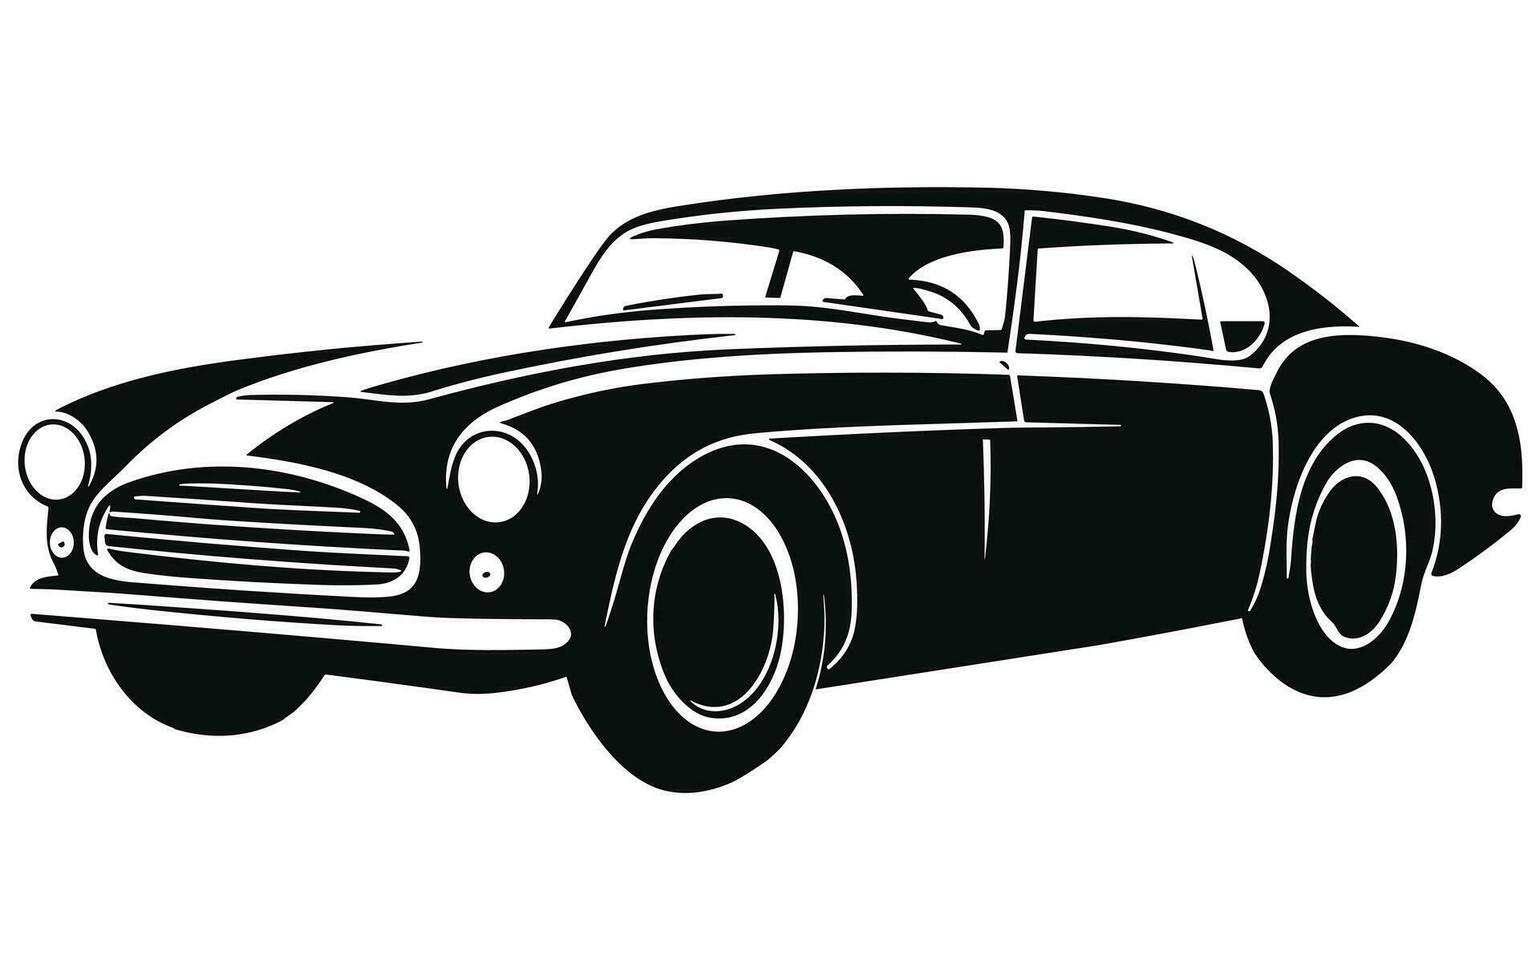 Vintage ▾ lusso gli sport auto design , classico Vintage ▾ gli sport macchina. vettore e illustrazione